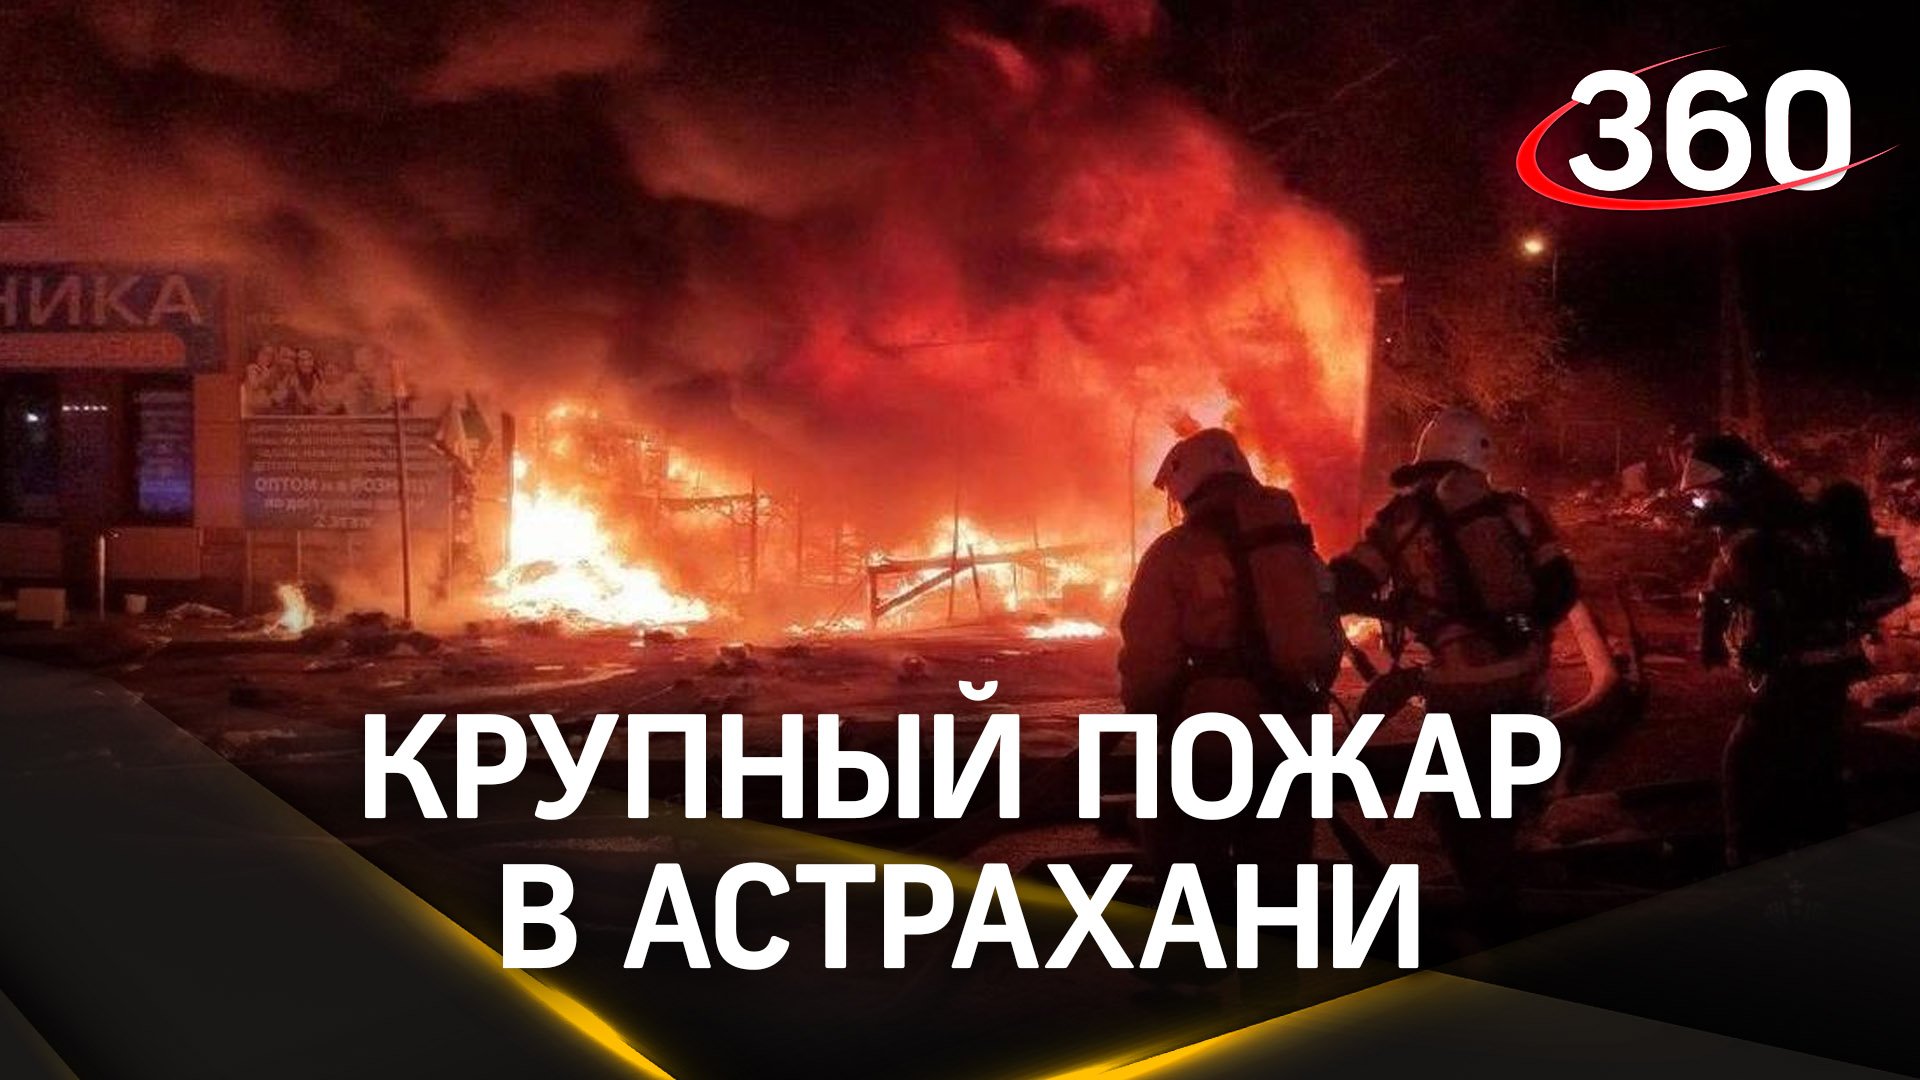 Пожар на крупнейшем рынке Астрахани: кадры с места ЧП